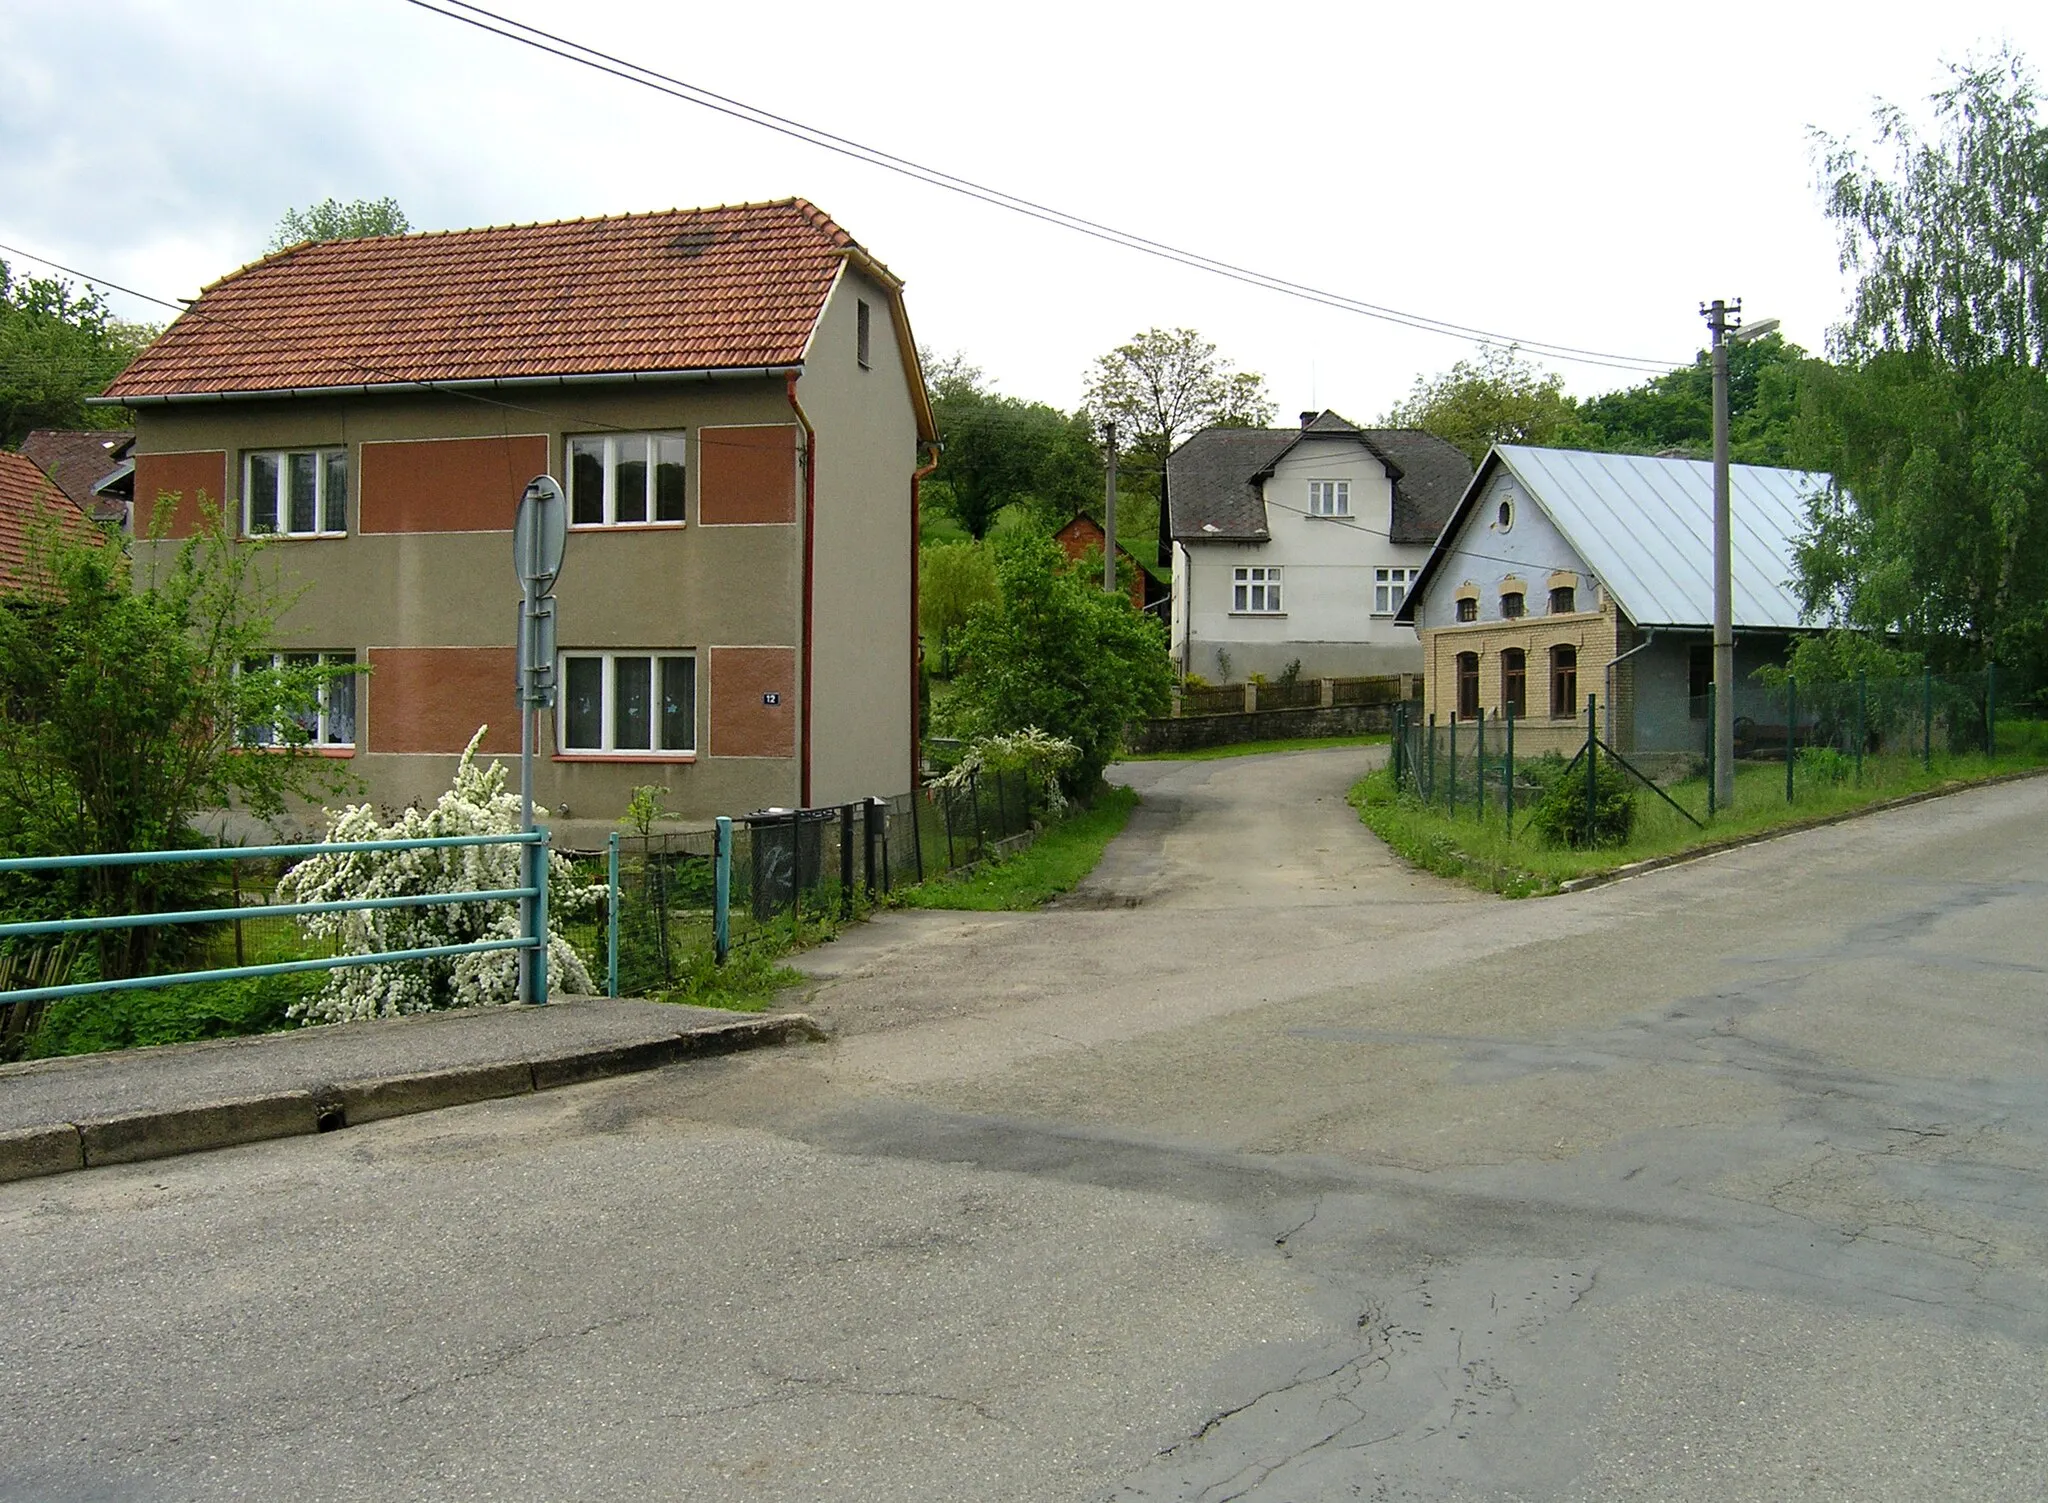 Photo showing: North part of Ublo village, Czech Republic